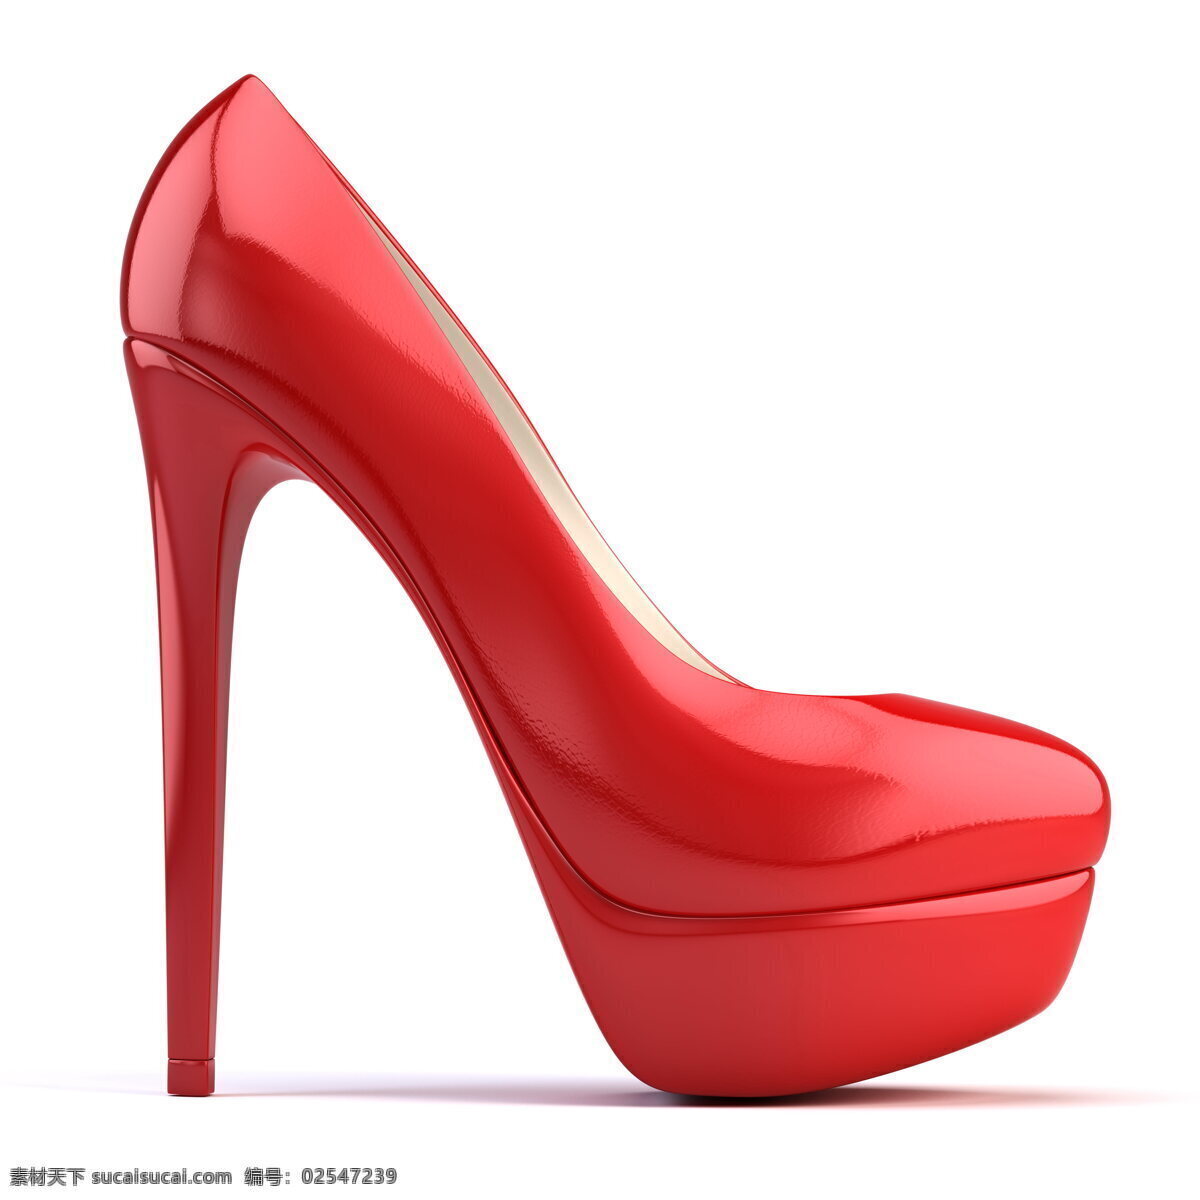 红色 高跟鞋 高清 红鞋 单鞋 超高跟 防水台